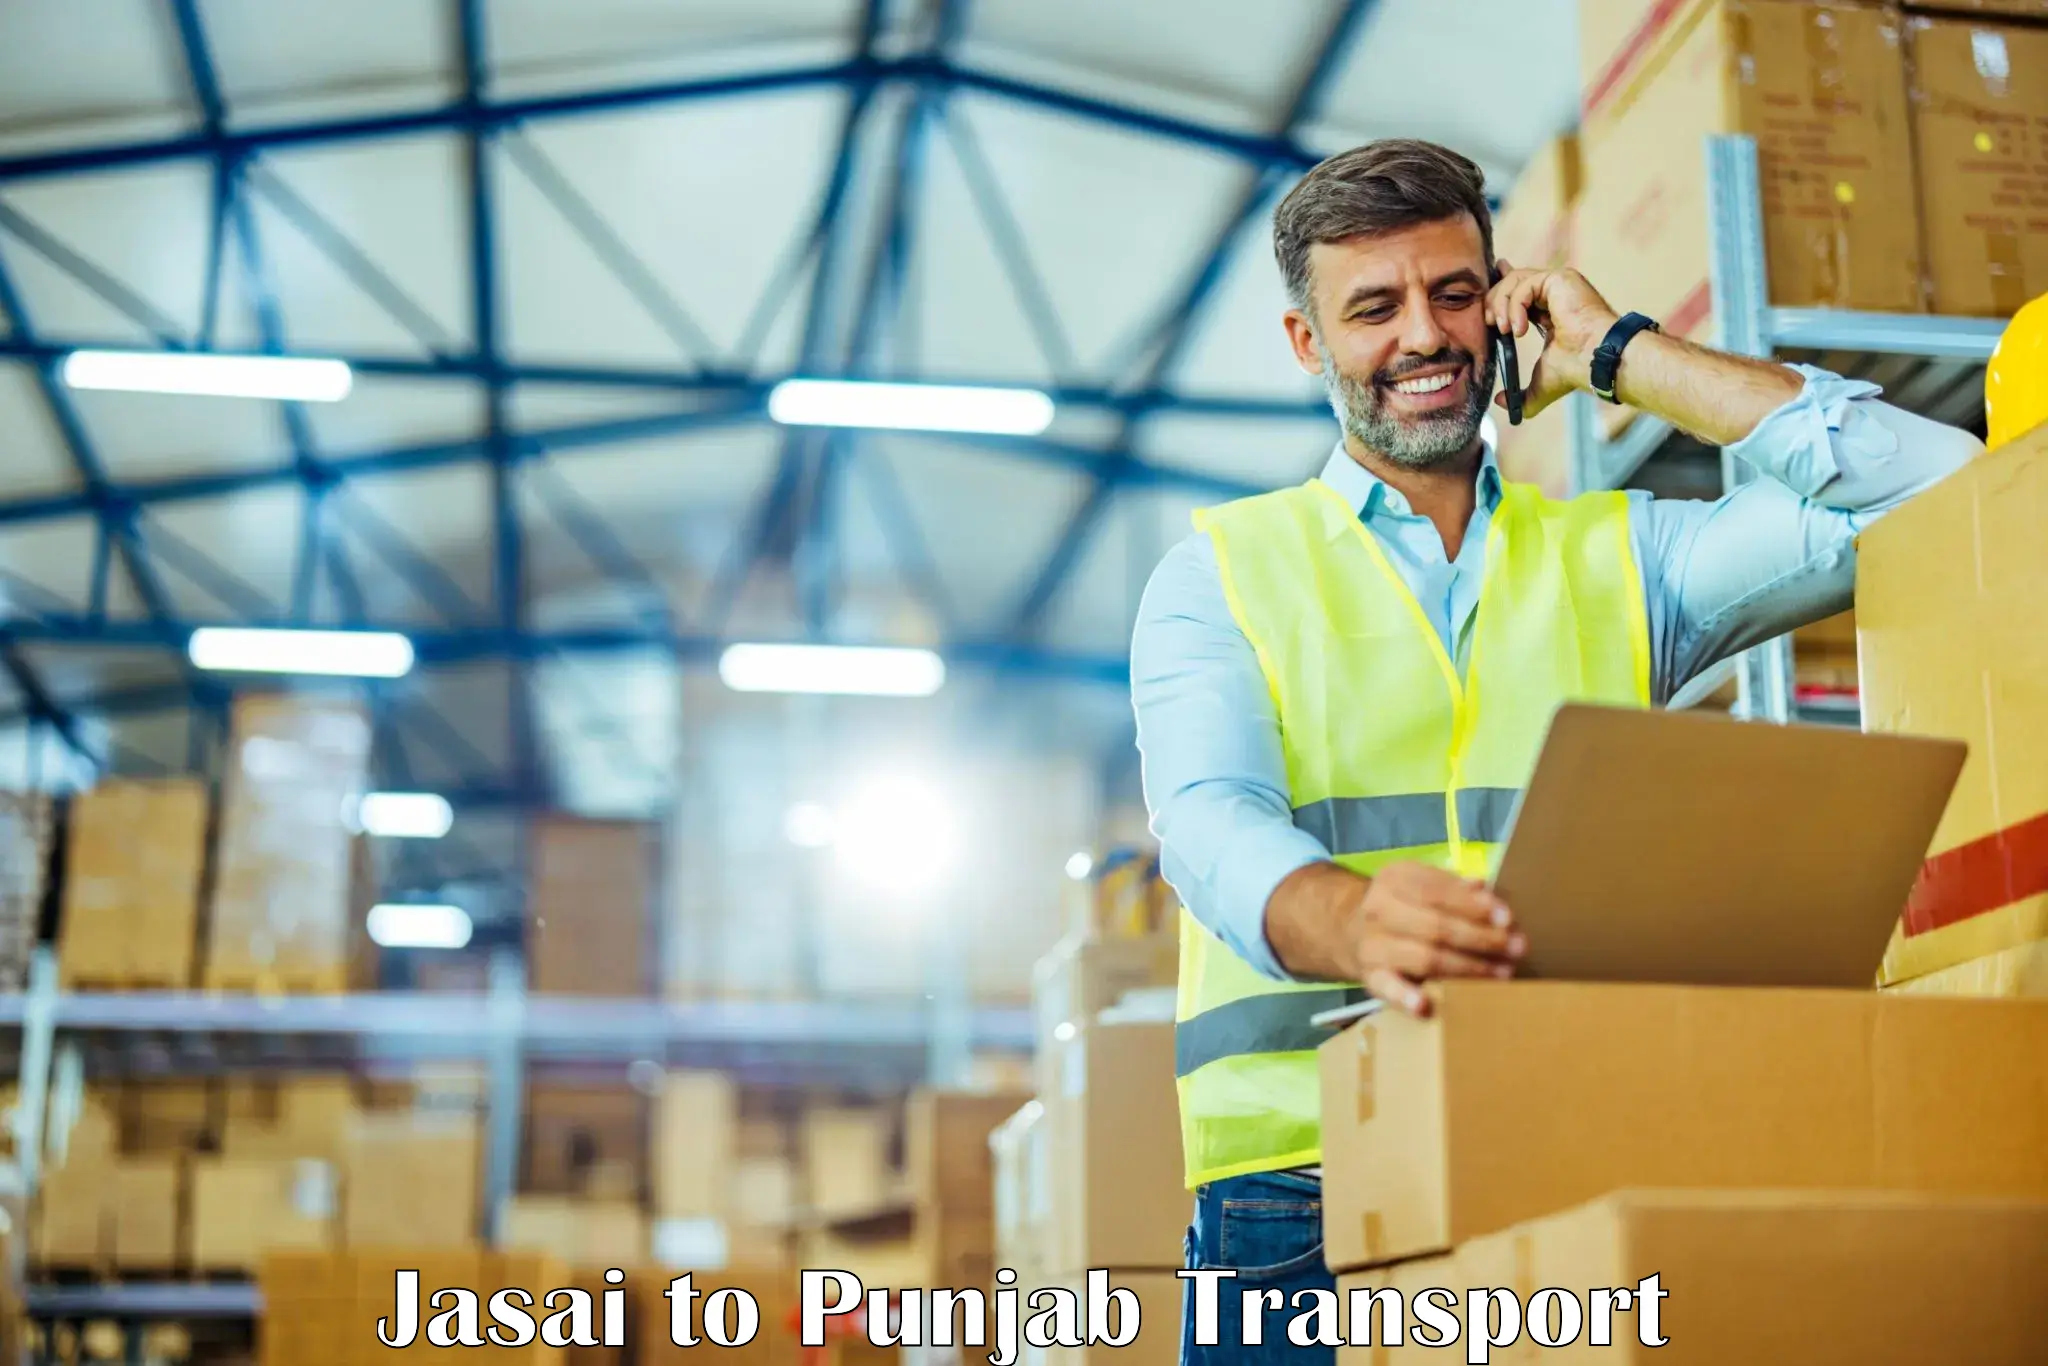 Air cargo transport services Jasai to Punjab